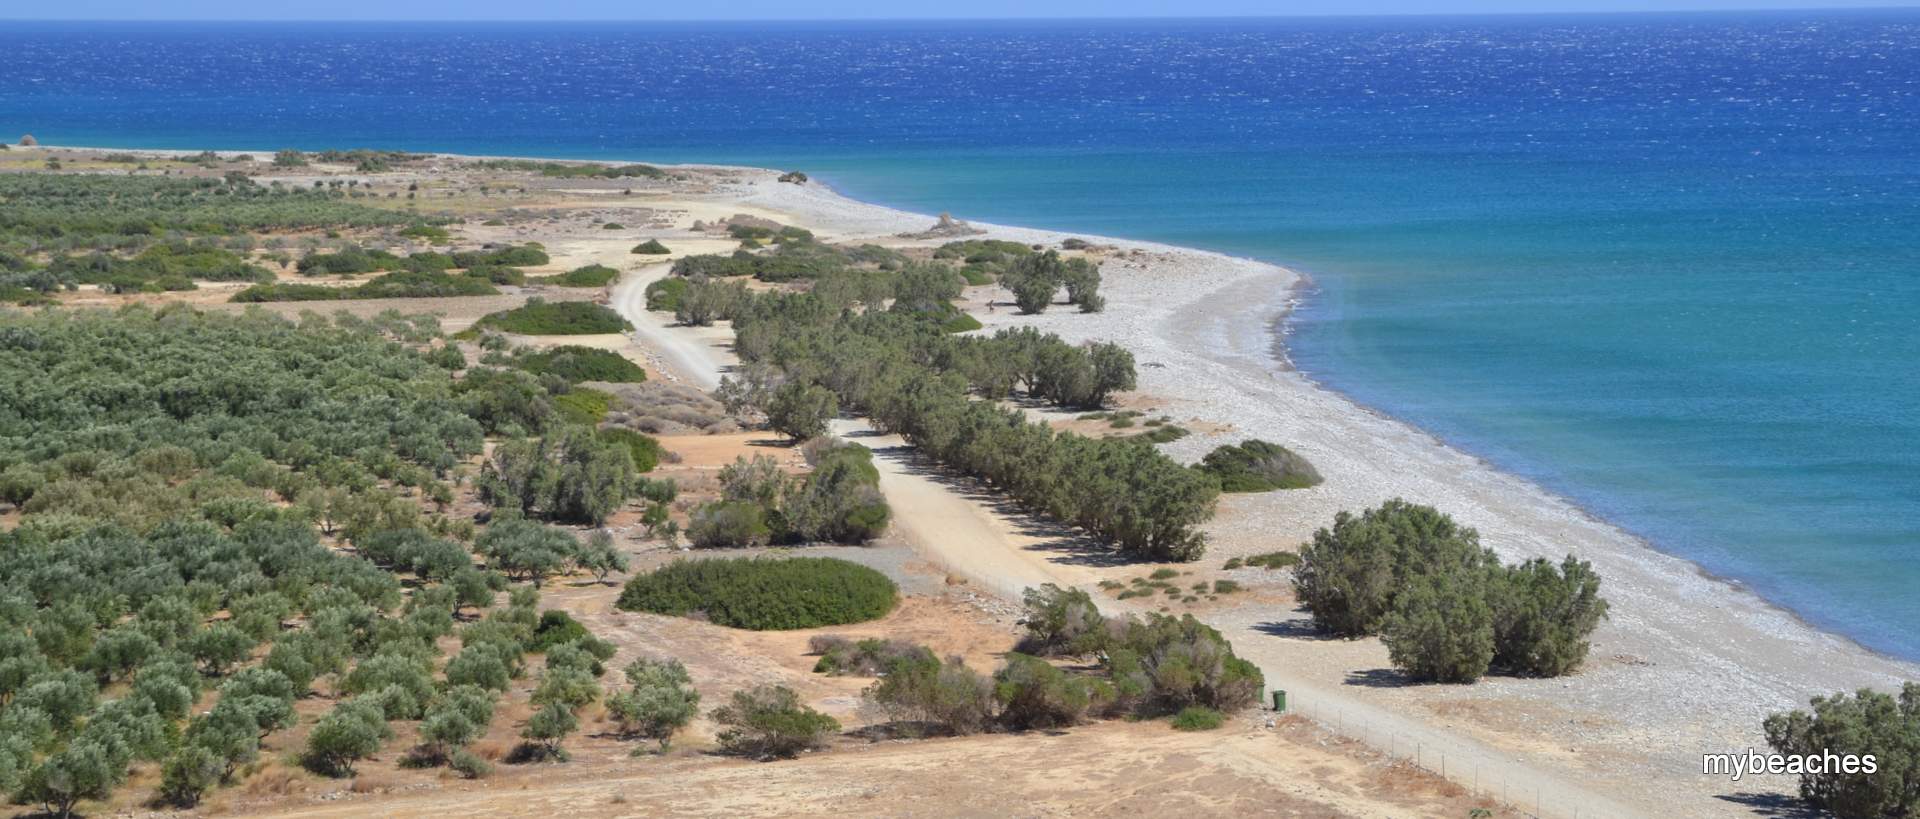 Dermatos beach, Iraklio, Crete, Greece